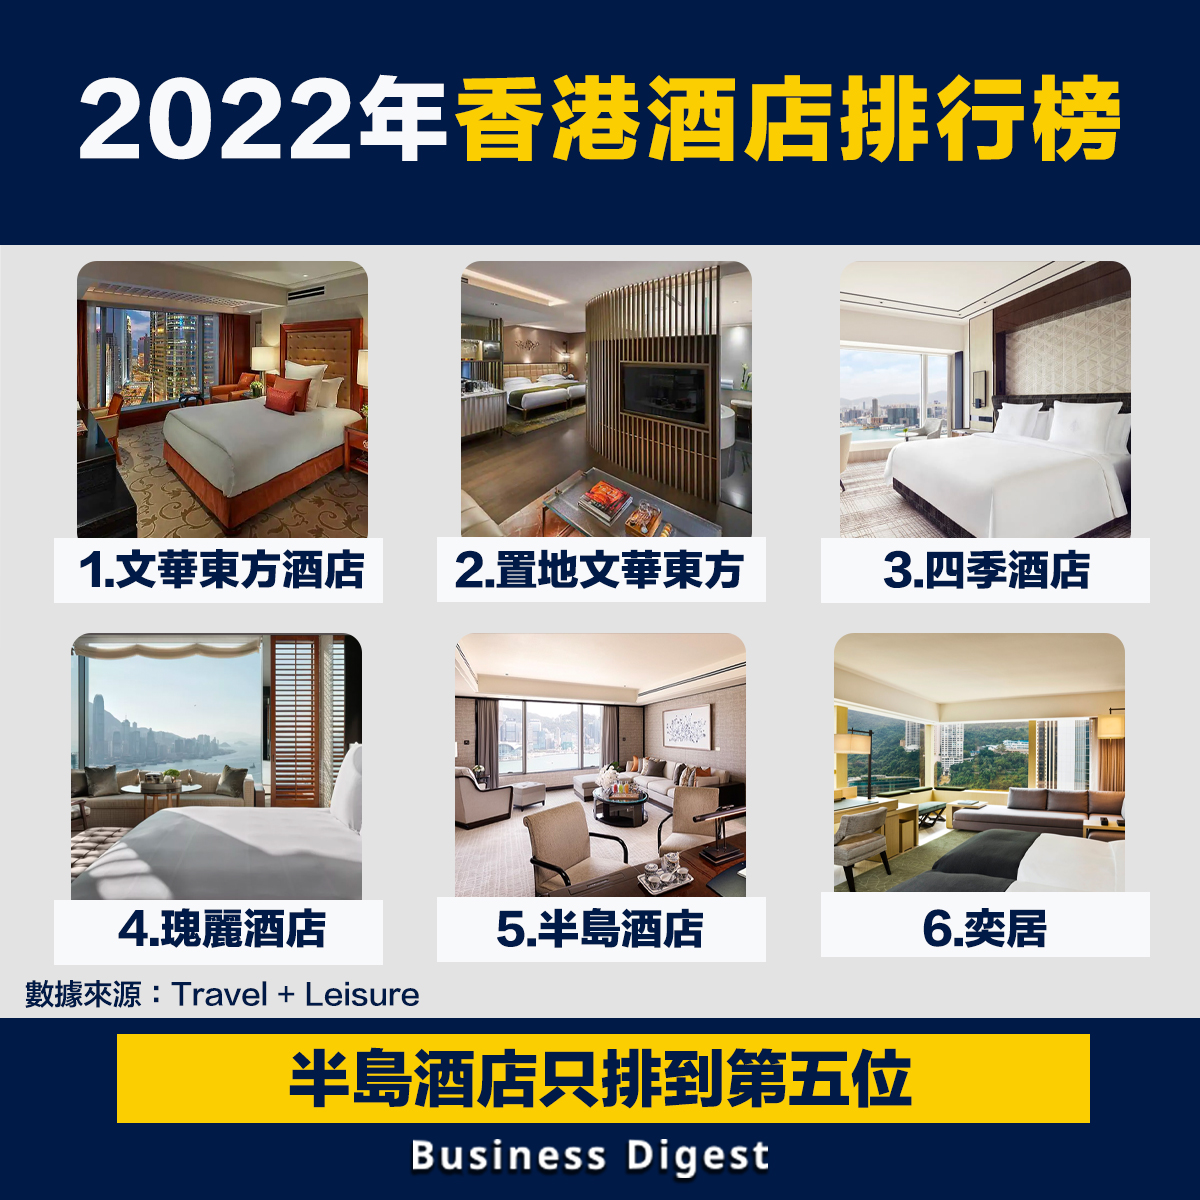 2022年香港酒店排名，半島酒店只排到第五位